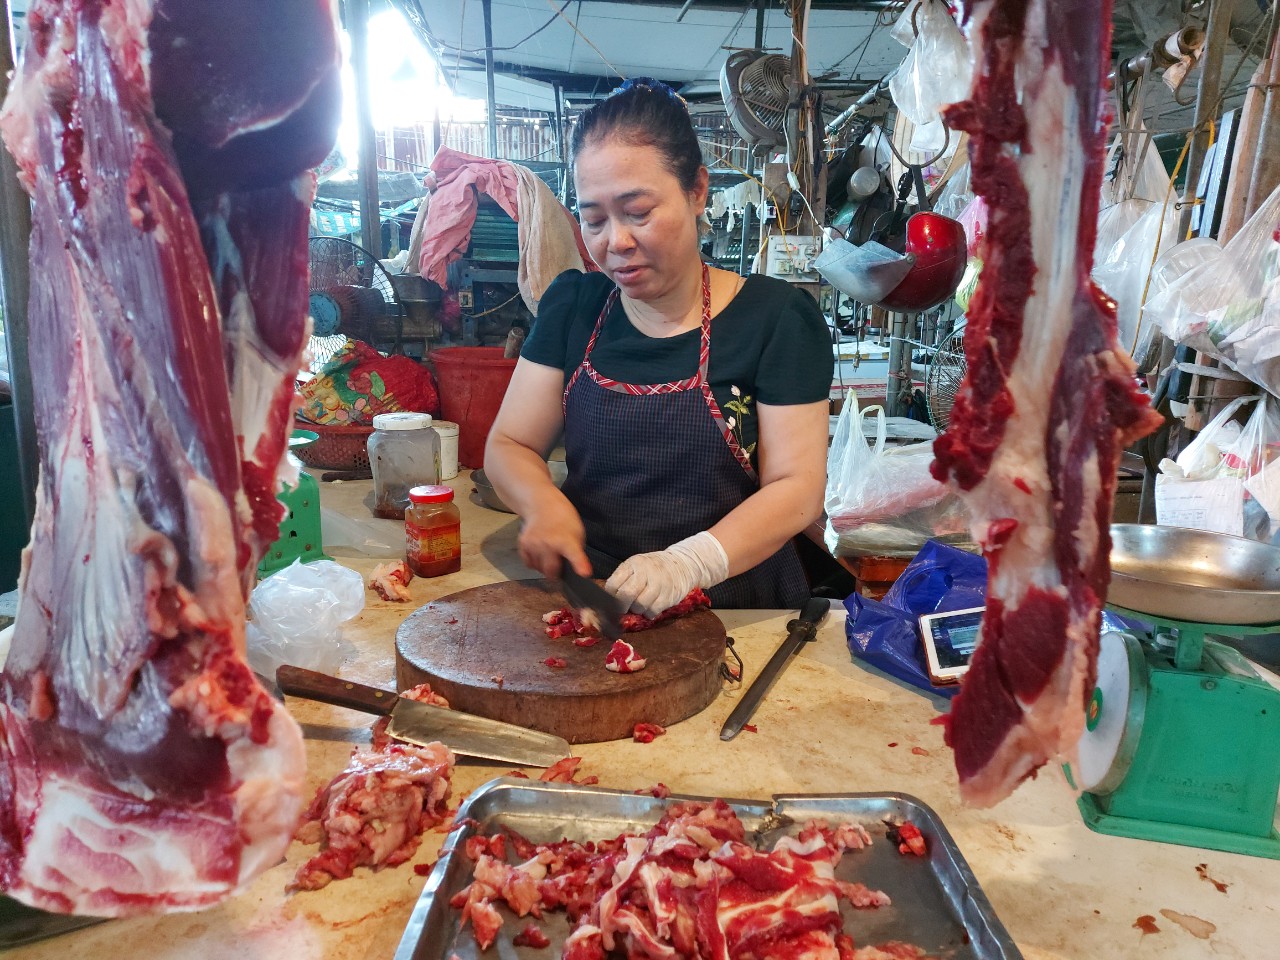 Chợ Quán Lau có 12 quầy bán thịt bò nay ngoài quầy bà Giang chỉ còn lại một vài quầy lác đác